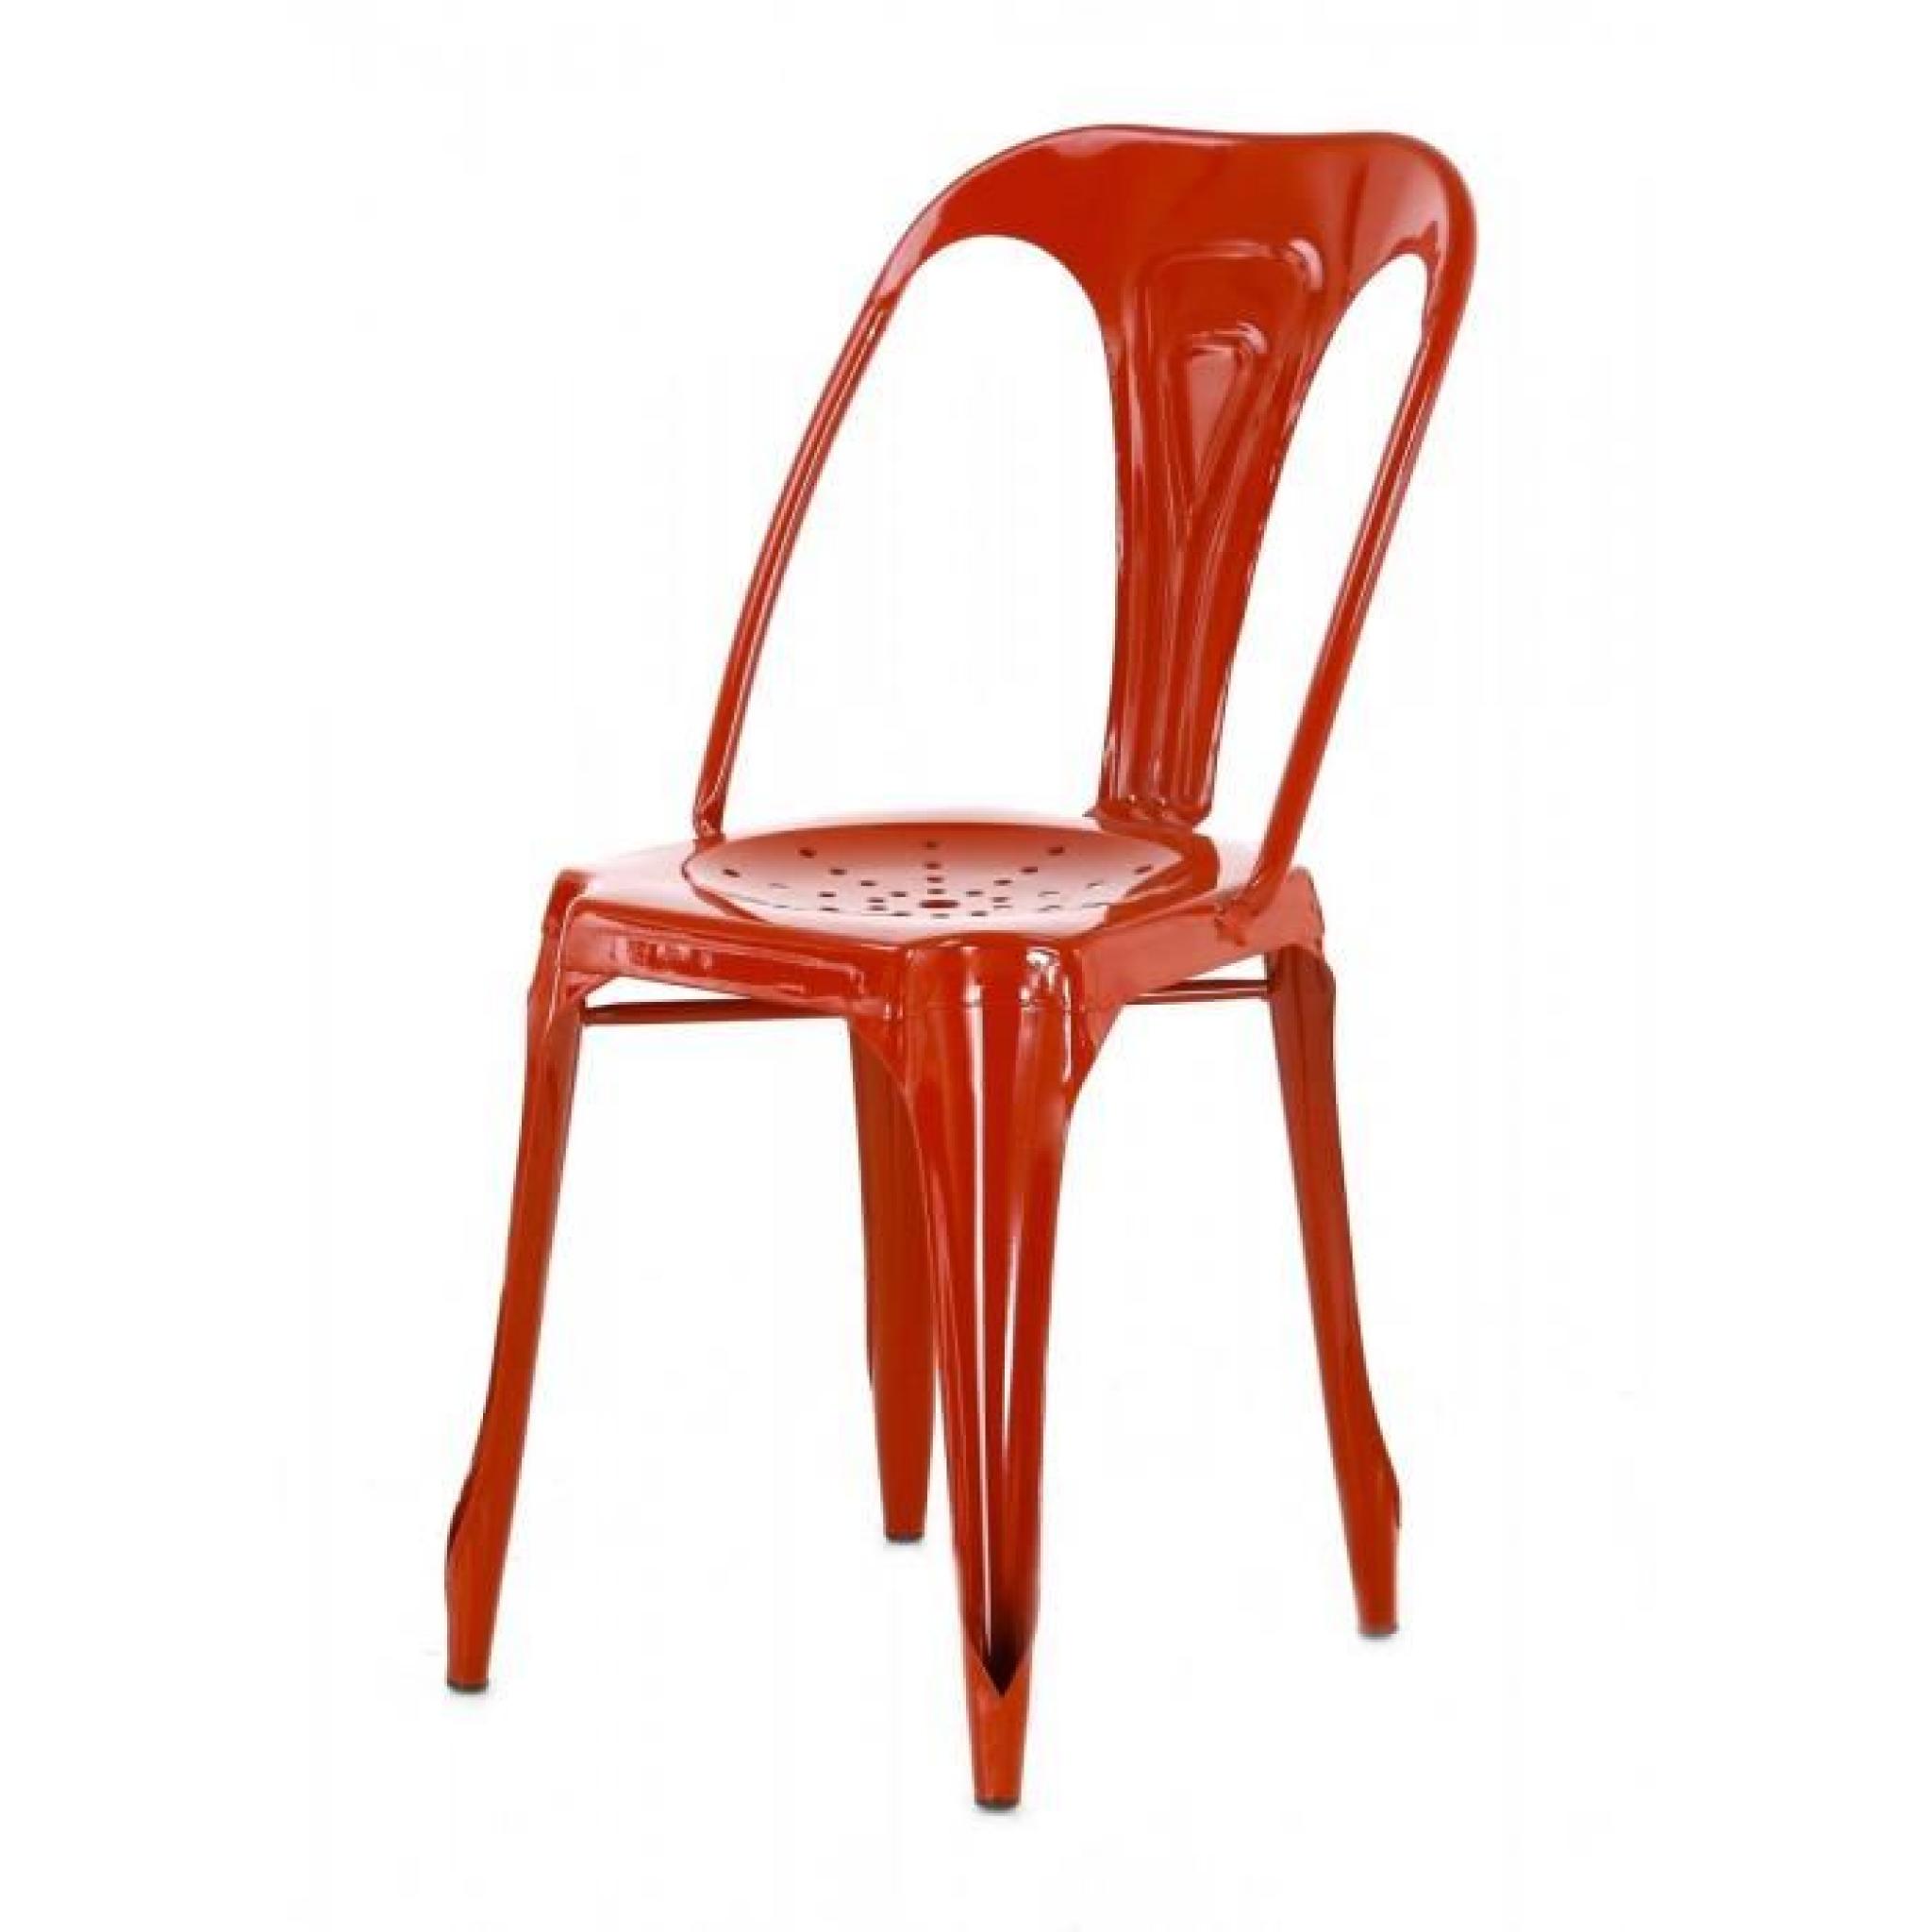 4x Chaise industrielle métal rouge brillant Indus - Inwood pas cher